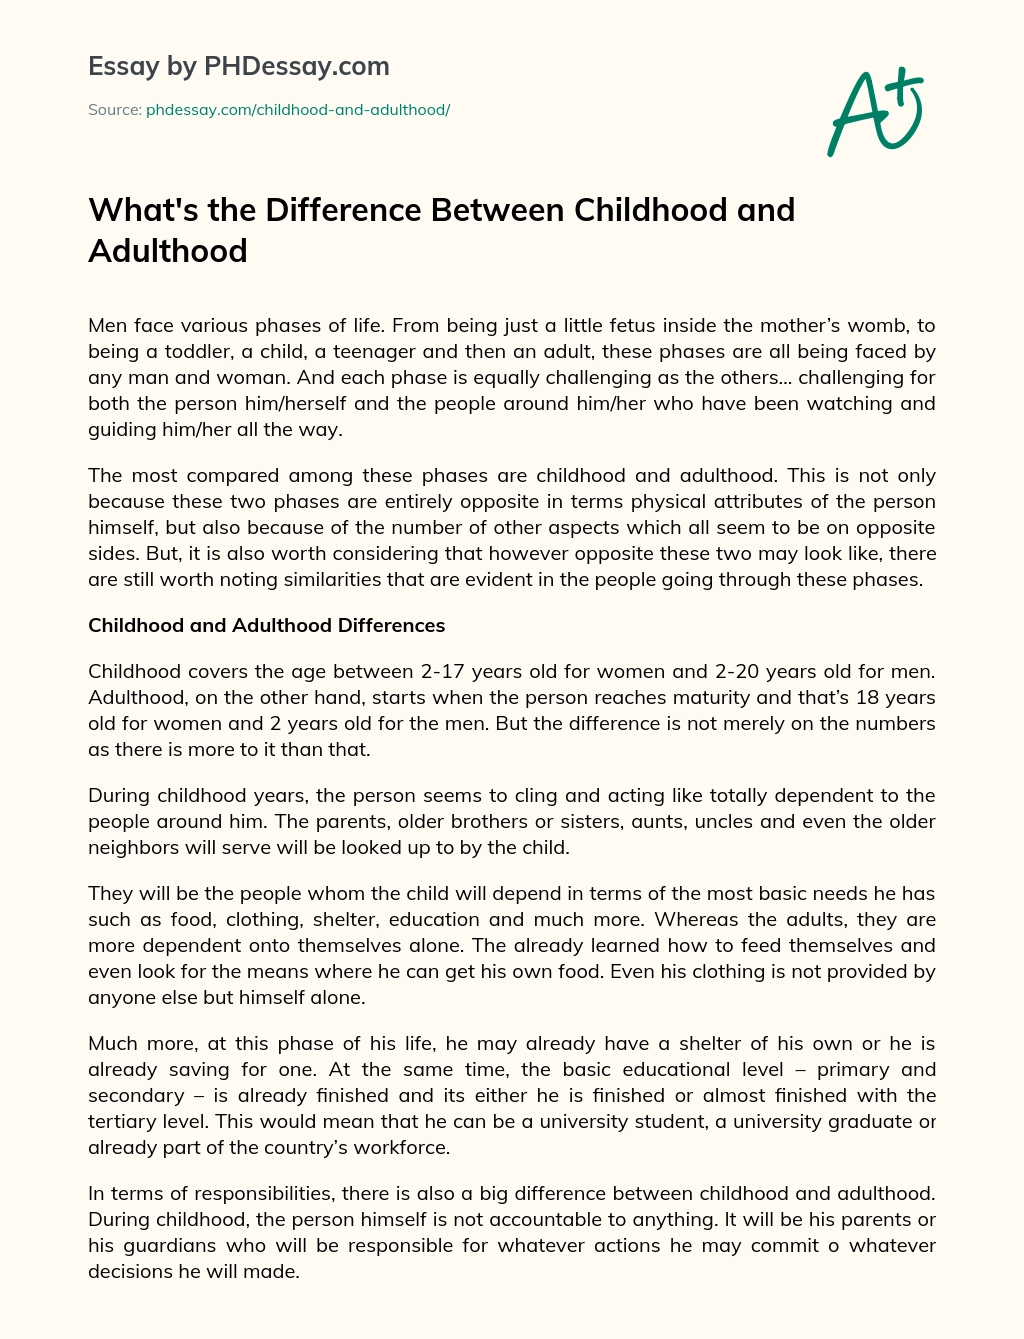 mikä on ero lapsuuden ja Aikuisuuden essee